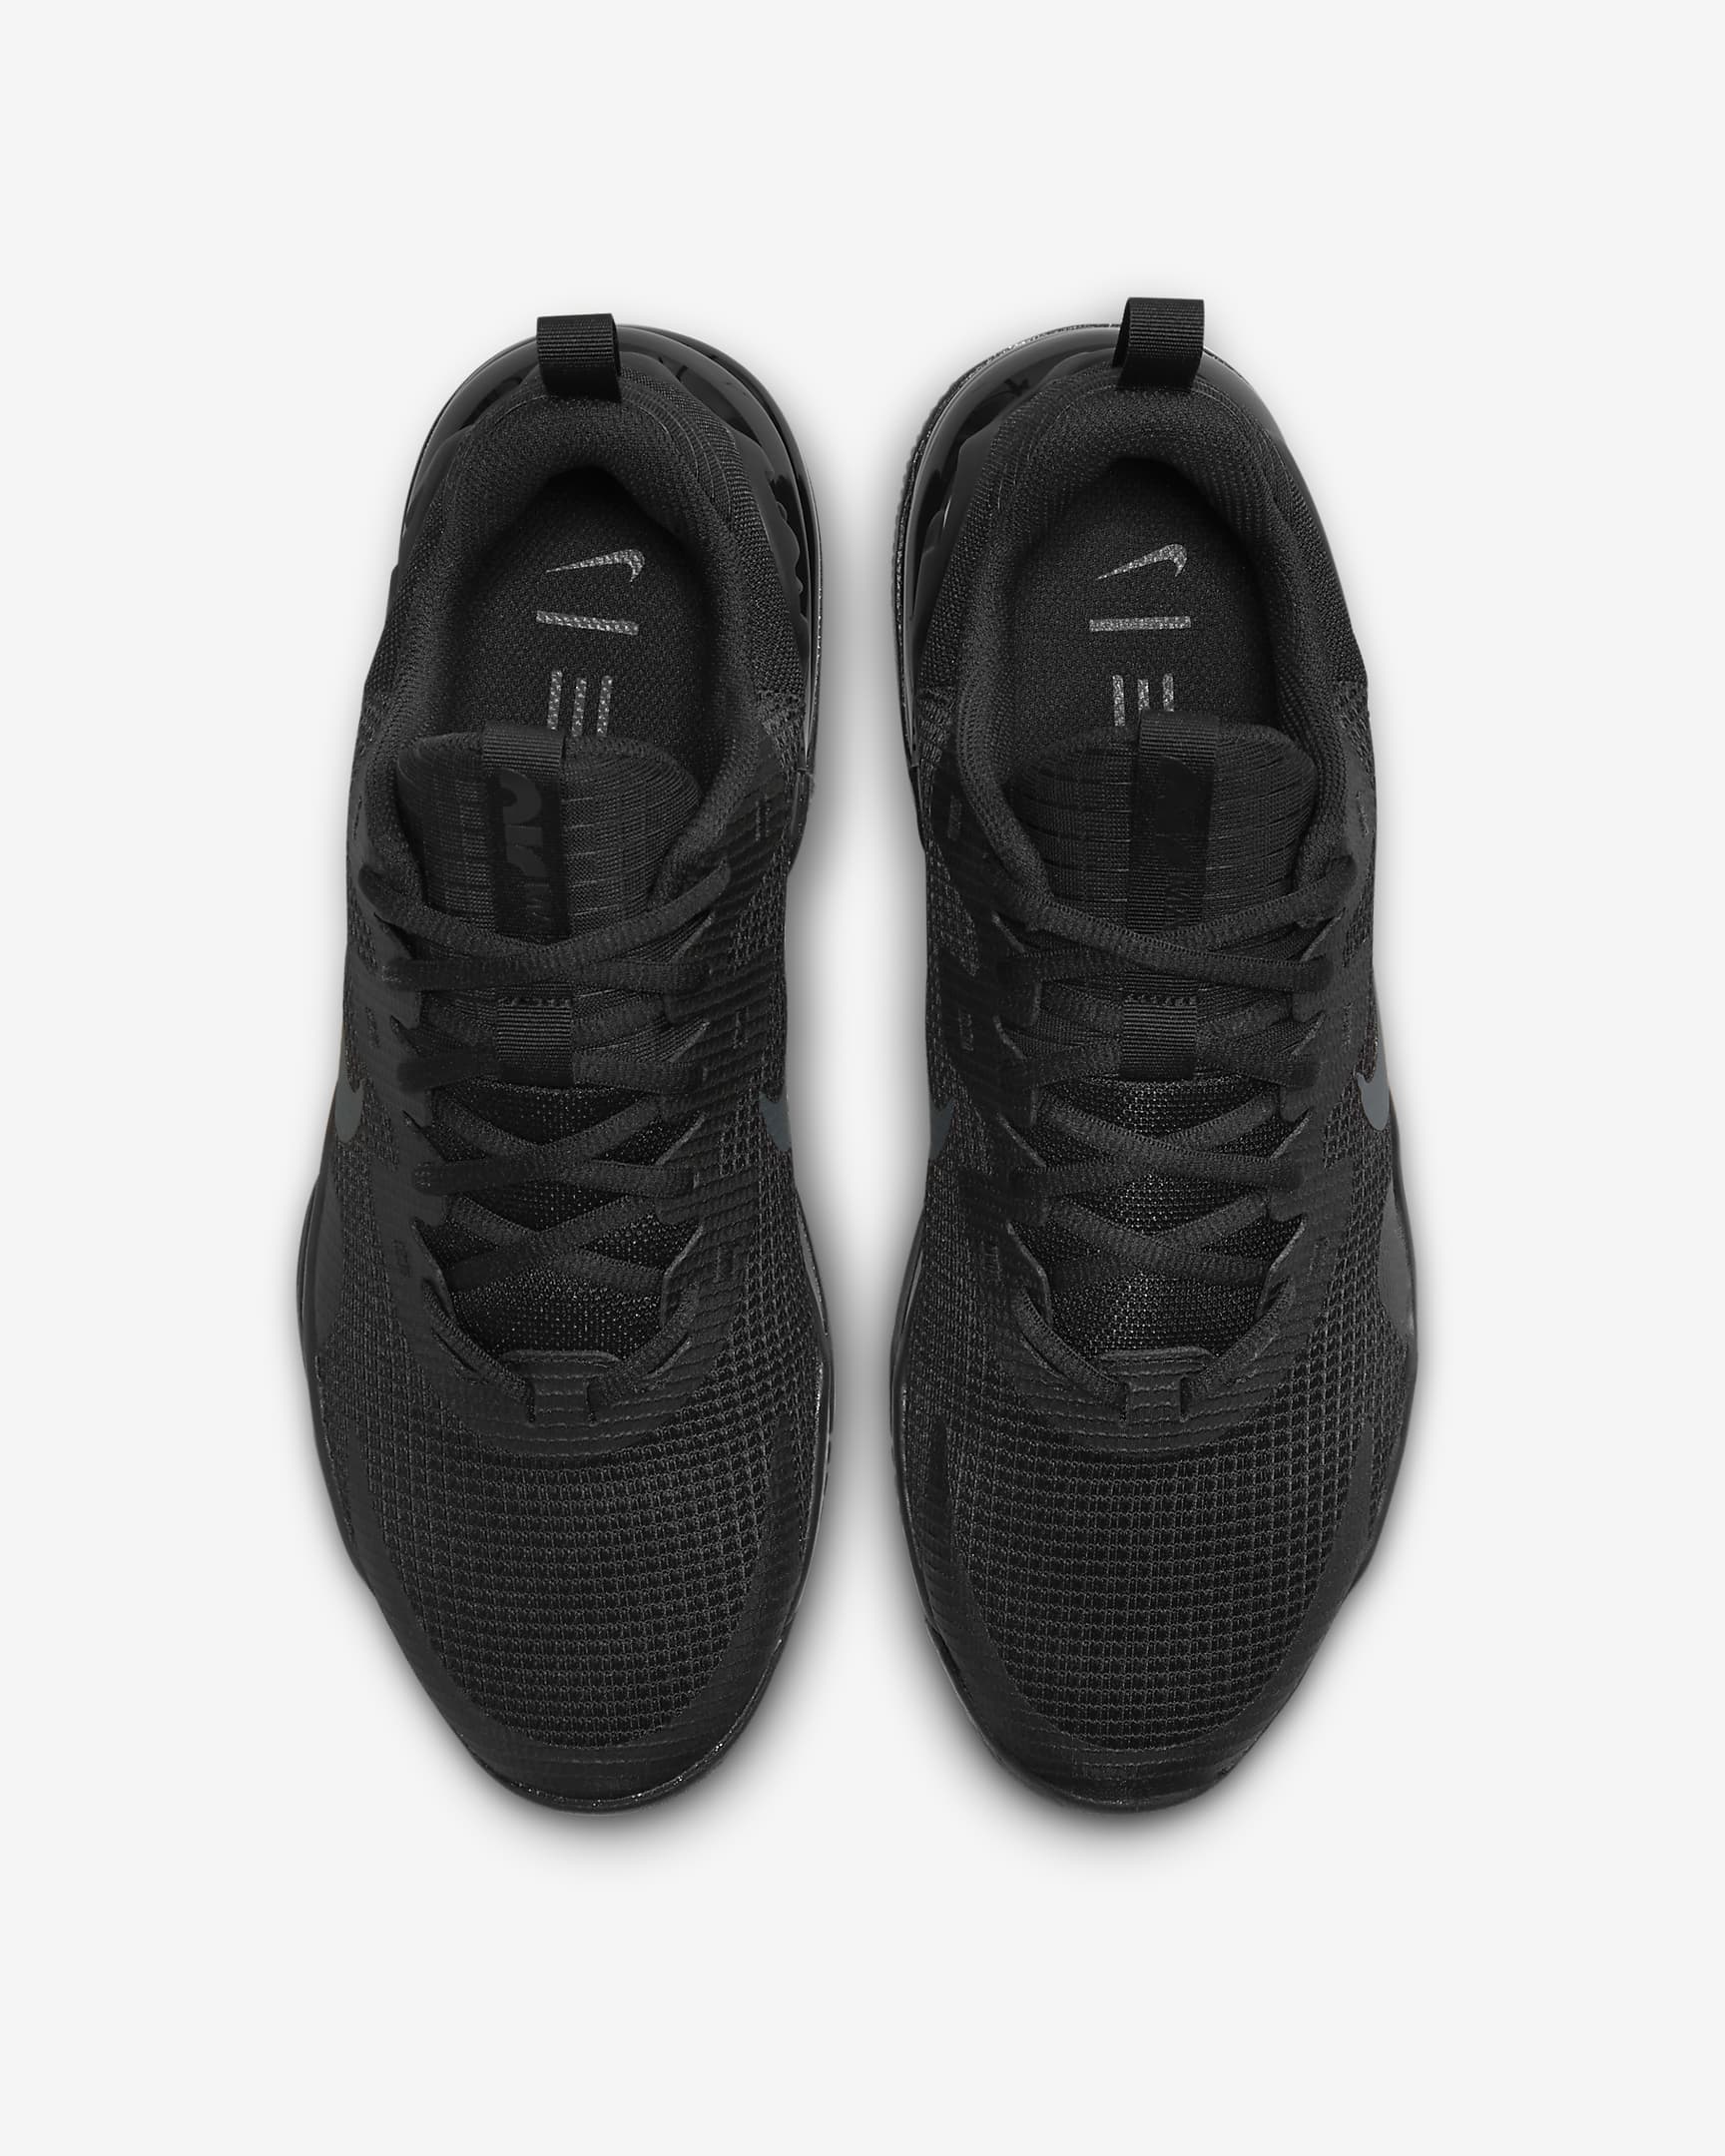 Nike Air Max Alpha Trainer 5-træningssko til mænd - sort/sort/Dark Smoke Grey